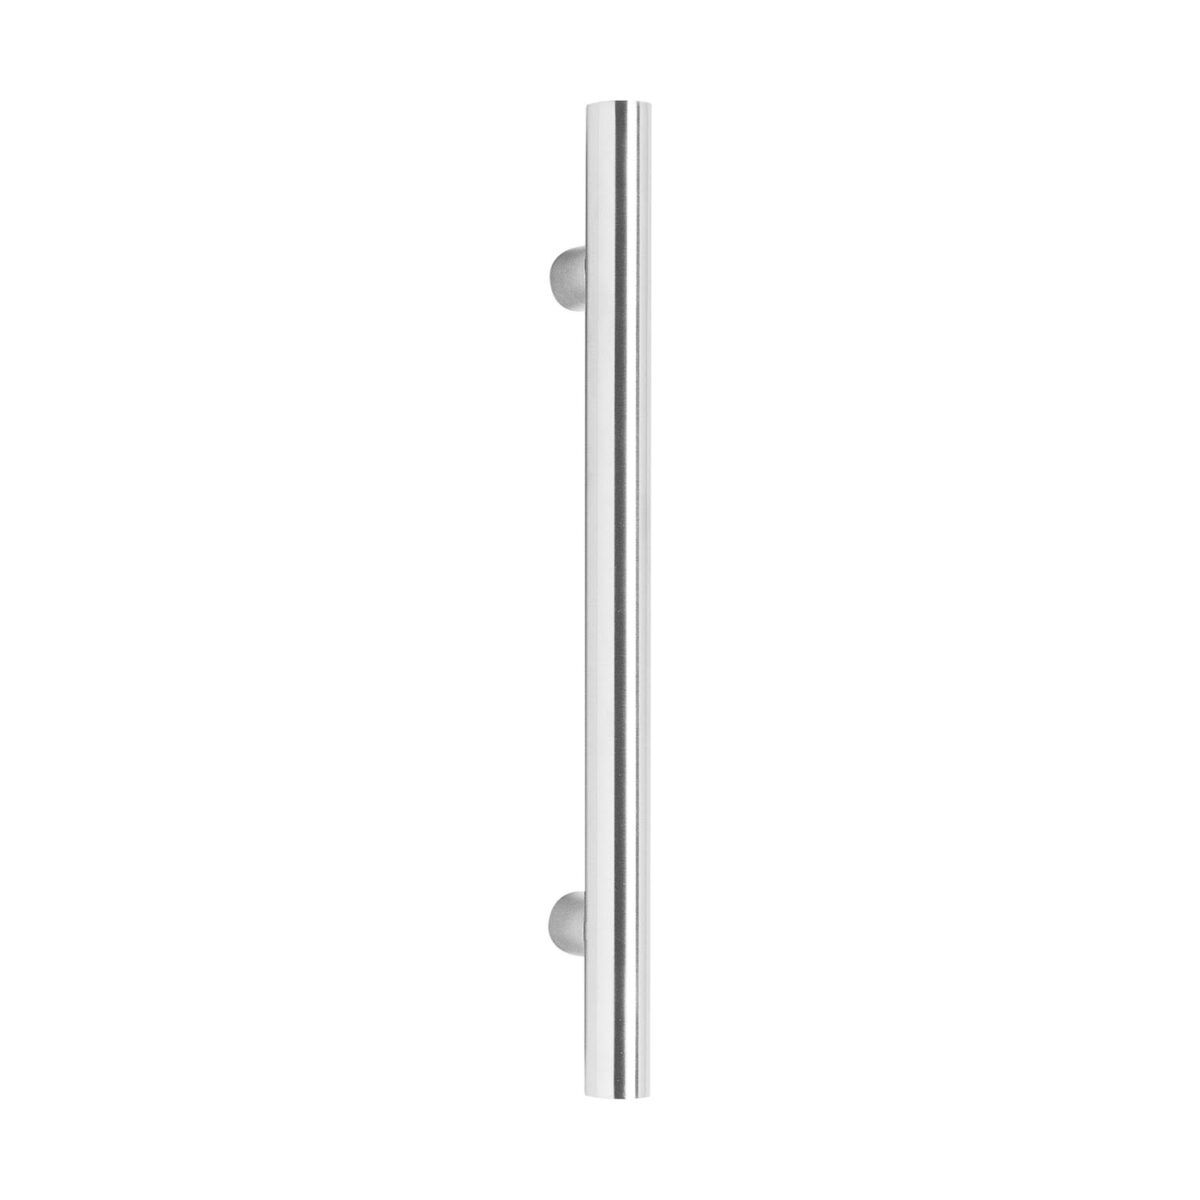 Intersteel Door handles 300 mm T shape brushed stainless steel